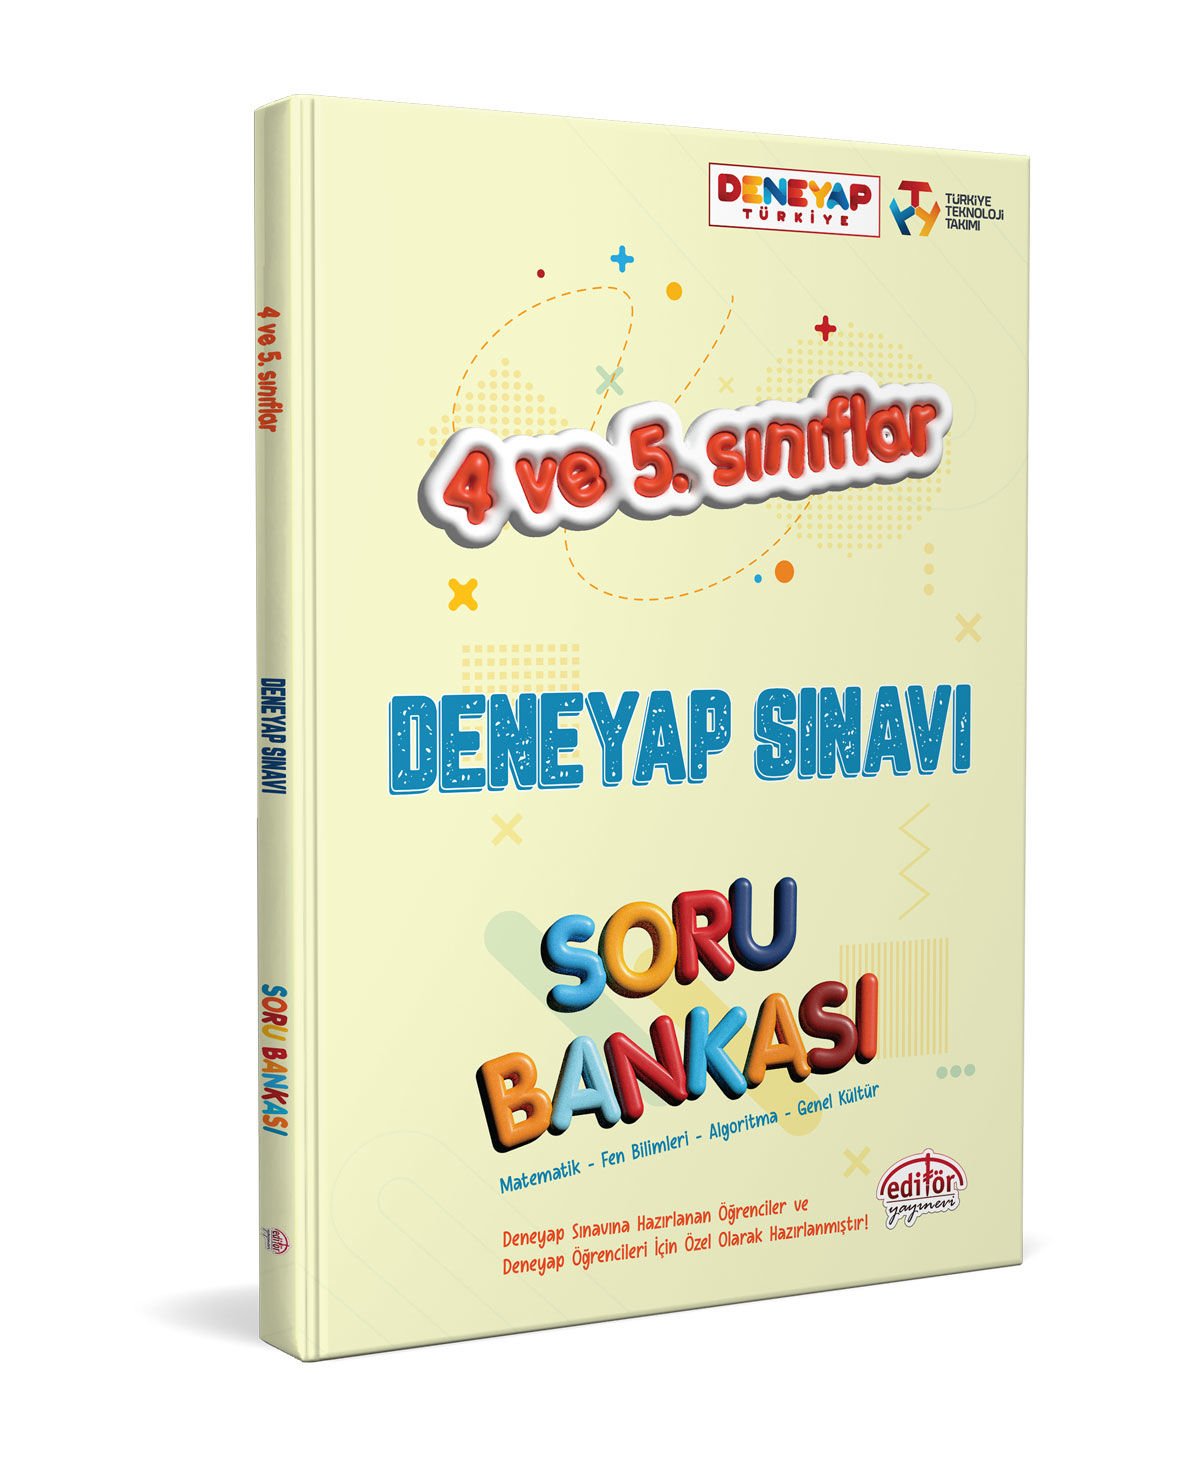 4 Ve 5. Sınıflar Deneyap Sınavı Soru Bankası Editör Yayınları